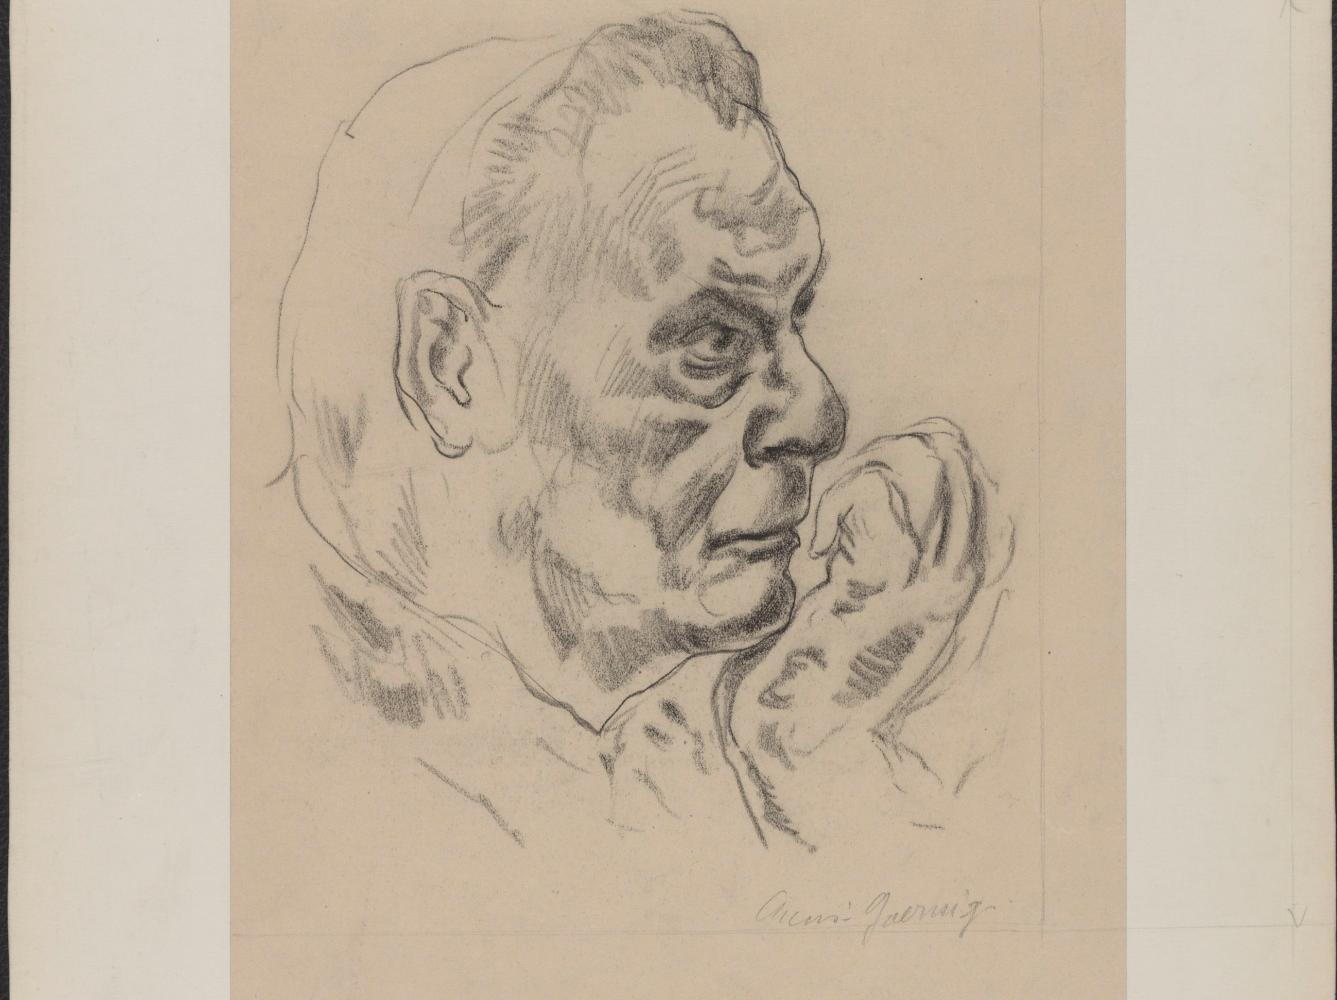 Eine Kohlezeichnung des französischen Künstlers Henri Pelletier zeigt den Nazi-Kriegsverbrecher Hermann Göring